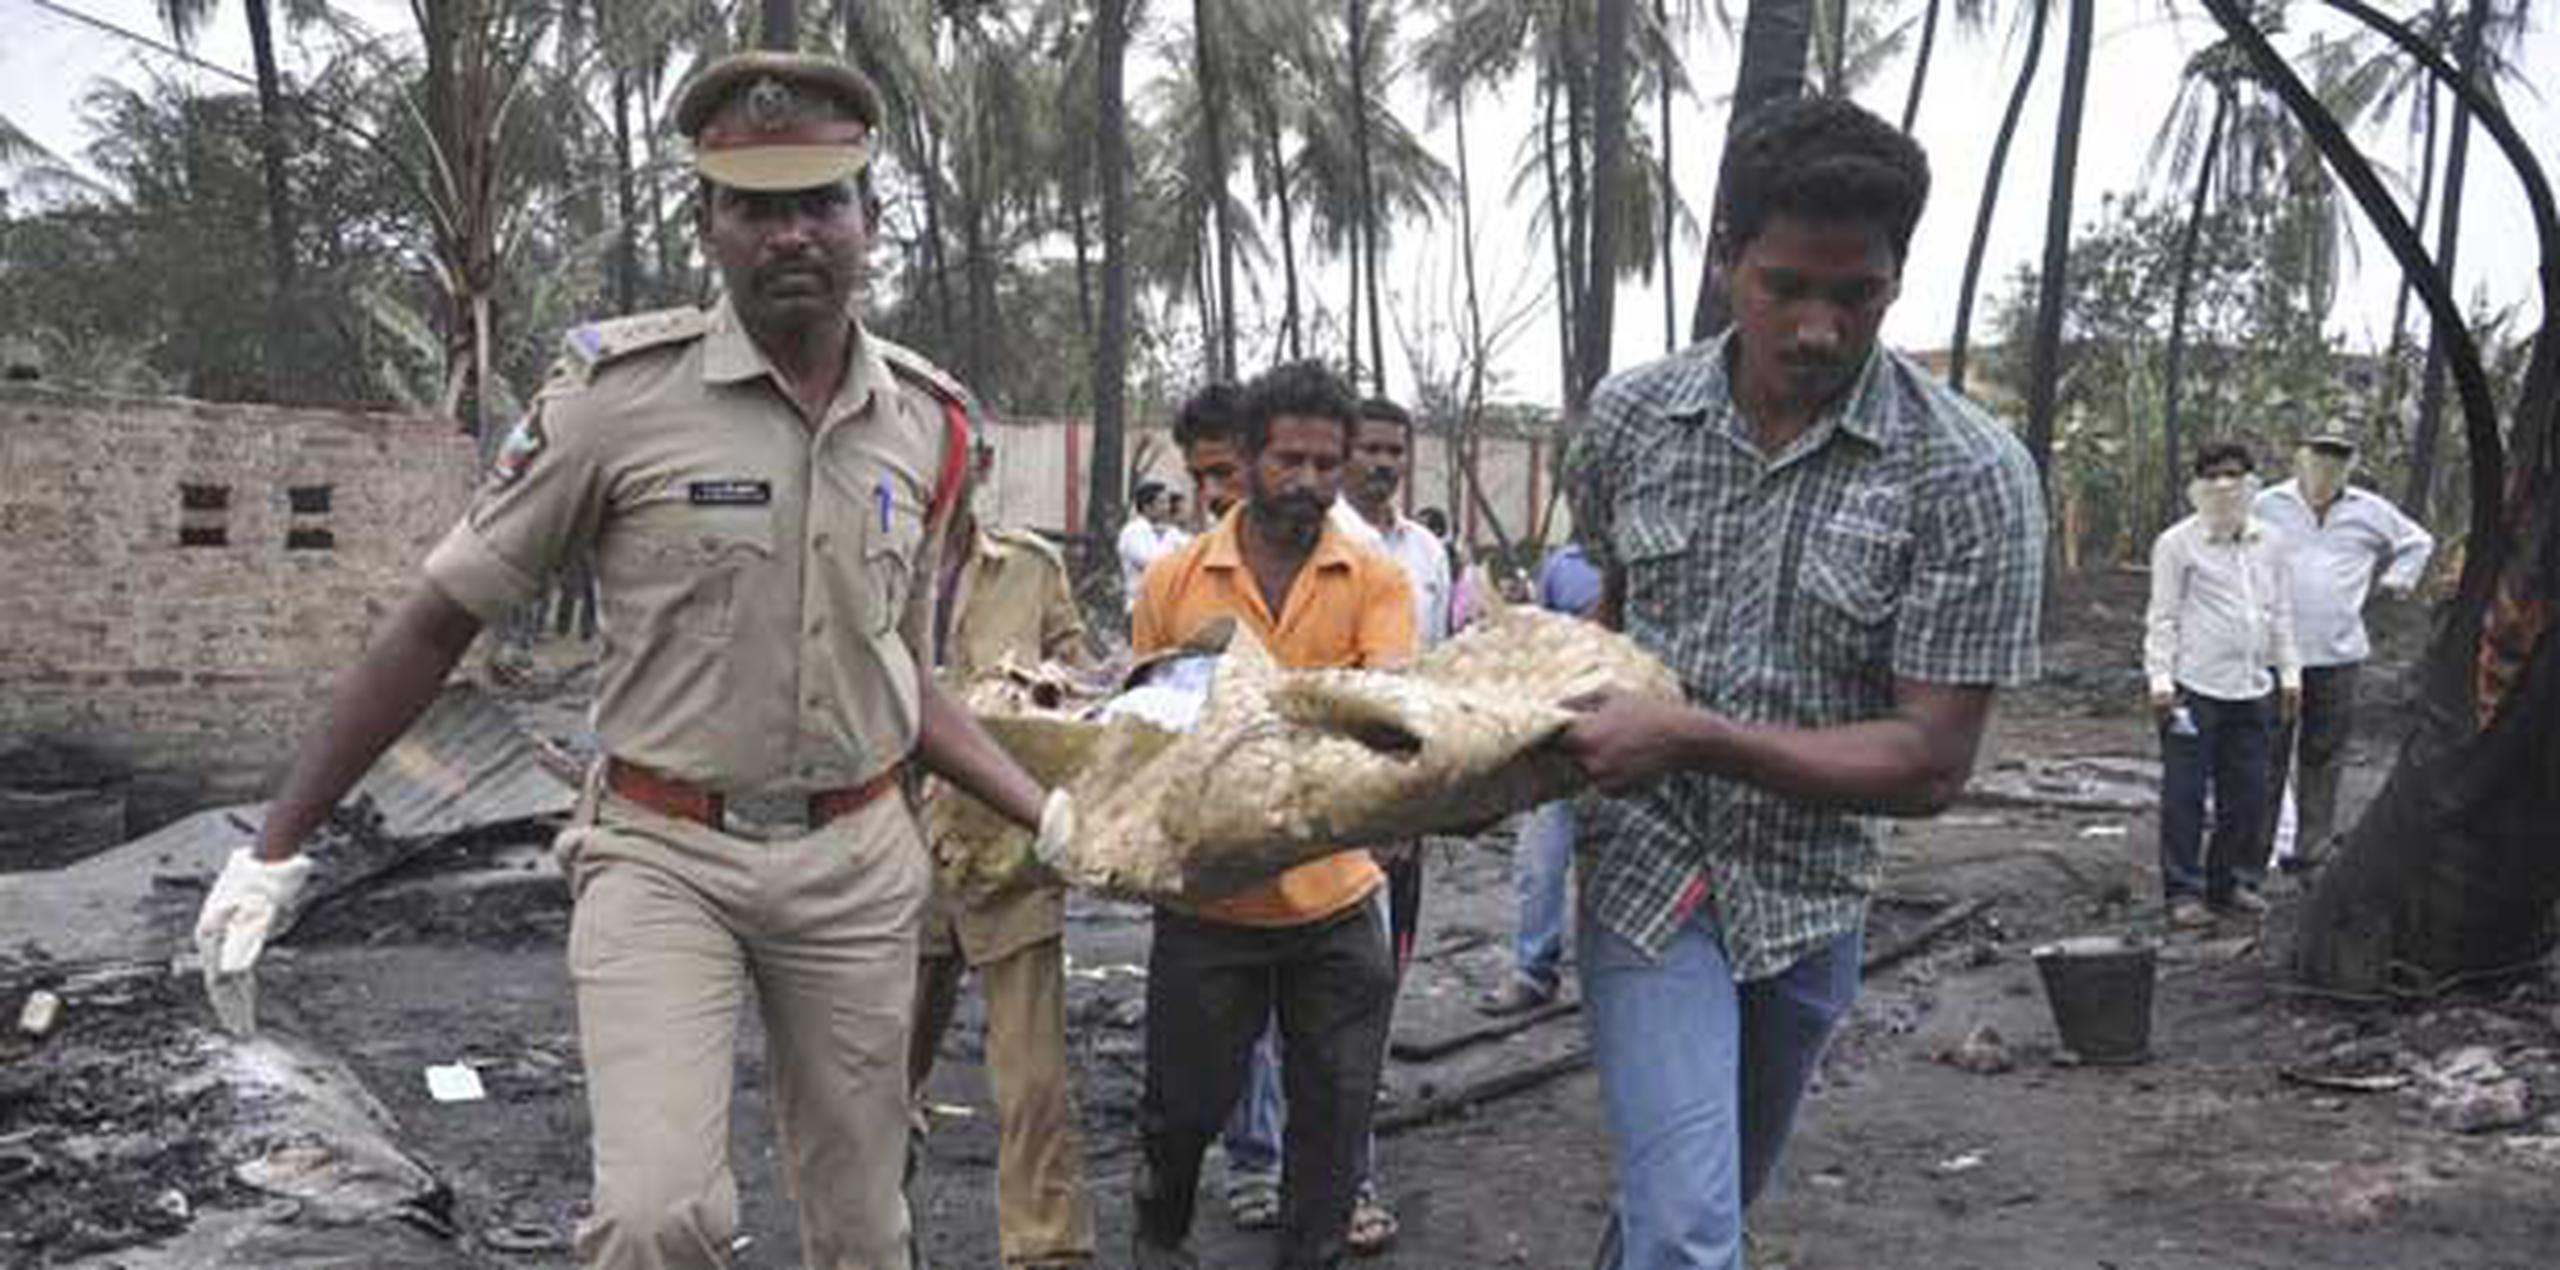 El ministro de gobierno de Andhra Pradesh, N. Chinna Rajappa, dijo que la explosión ocurrió alrededor de las 5:30 de la mañana en la aldea de Nagaram, donde hay una estación de conexión de la compañía de gas. (Agencia EFE)